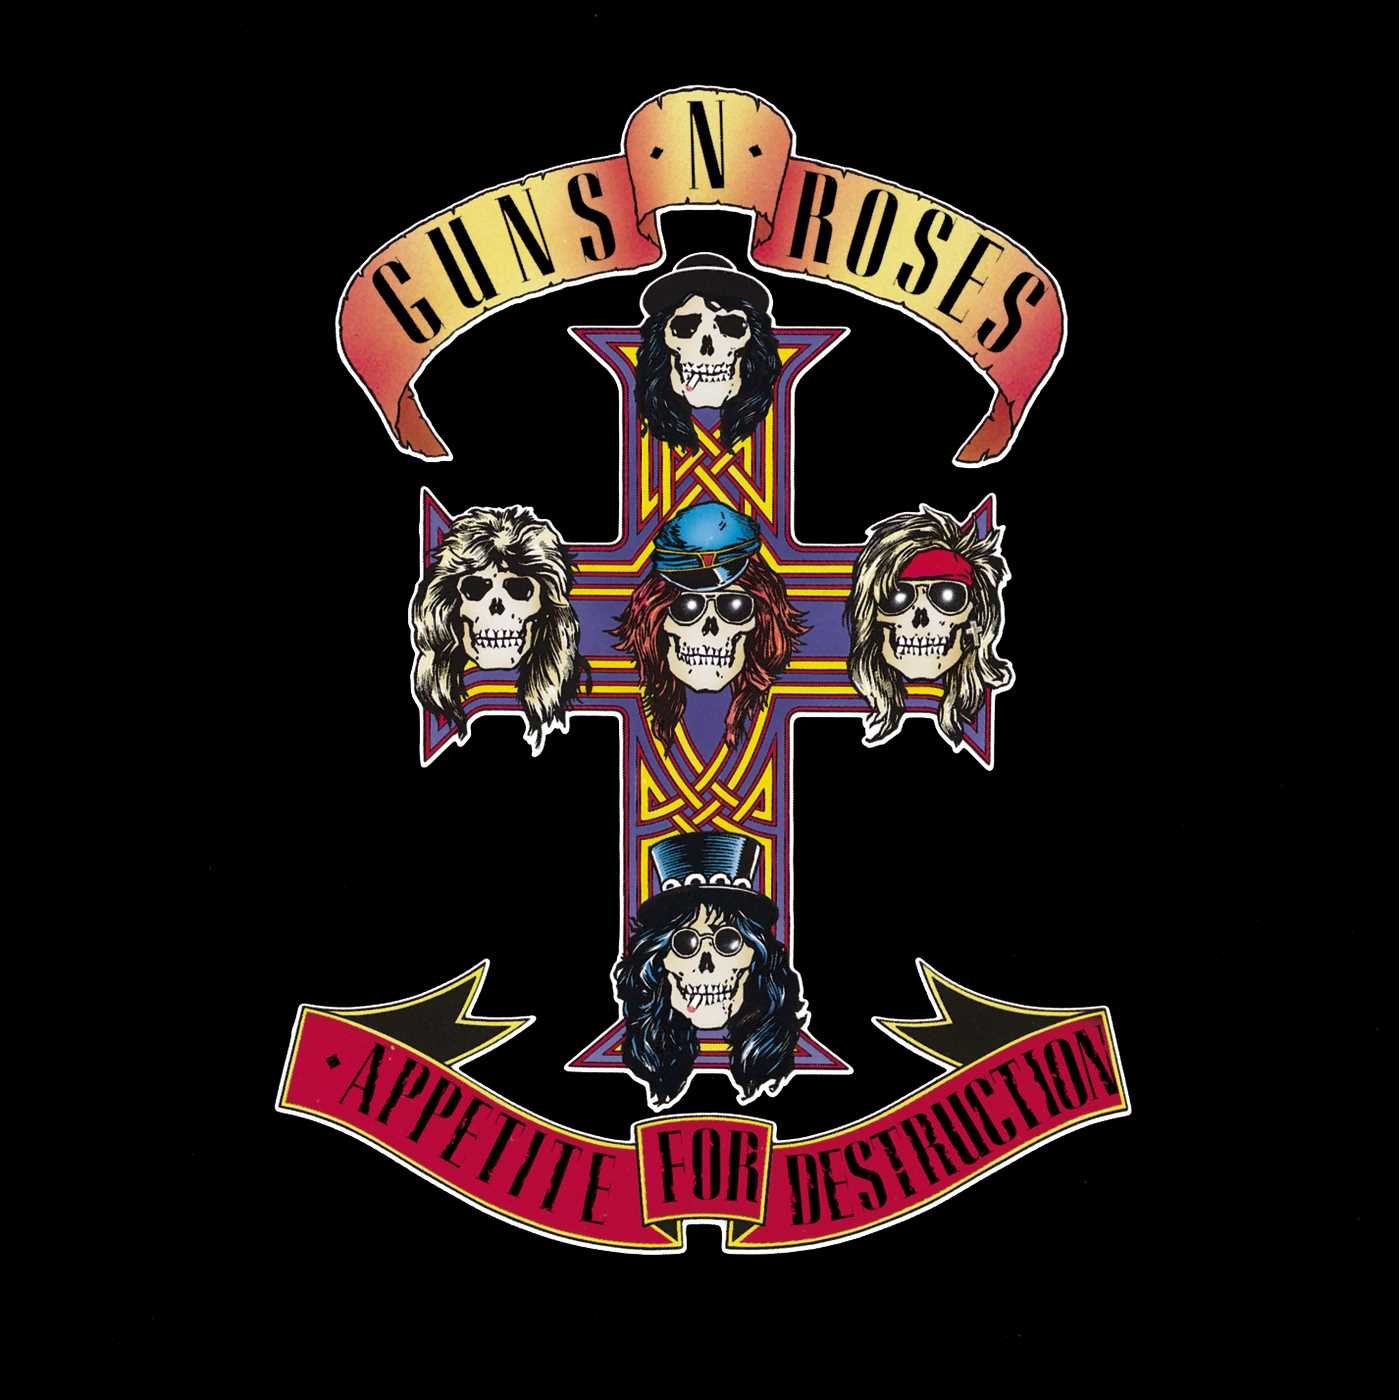 Guns N' Roses - Appetite For Destruction (Albumcover)